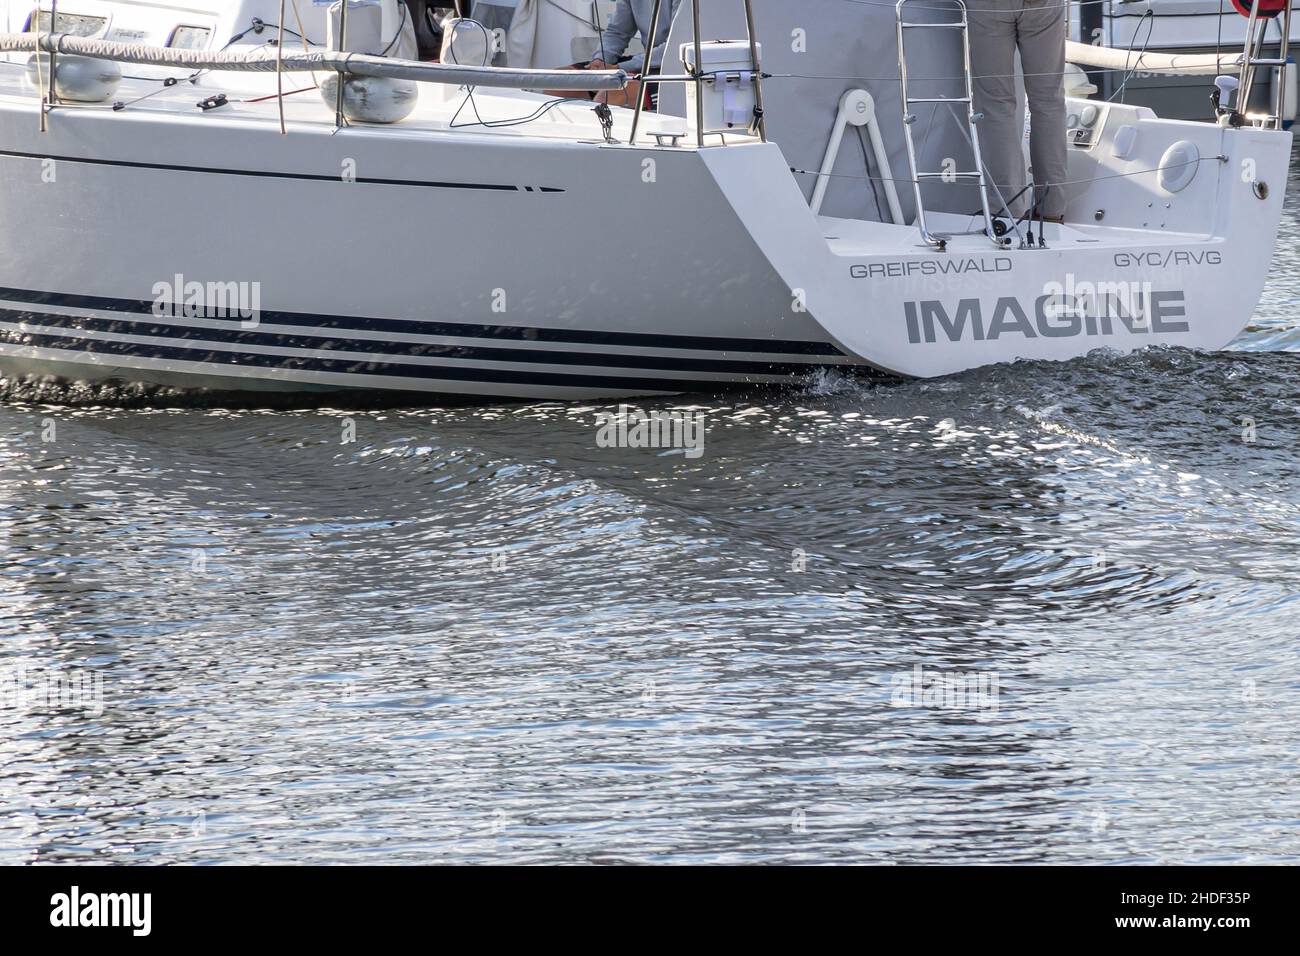 Hansestadt Greifswald, Mecklenburg-Vorpommern, Deutschland - 25. August 2014: Das Segelboot IMAGINE fährt auf dem Fluss Ryck durch den Stadthafen Gei Stockfoto